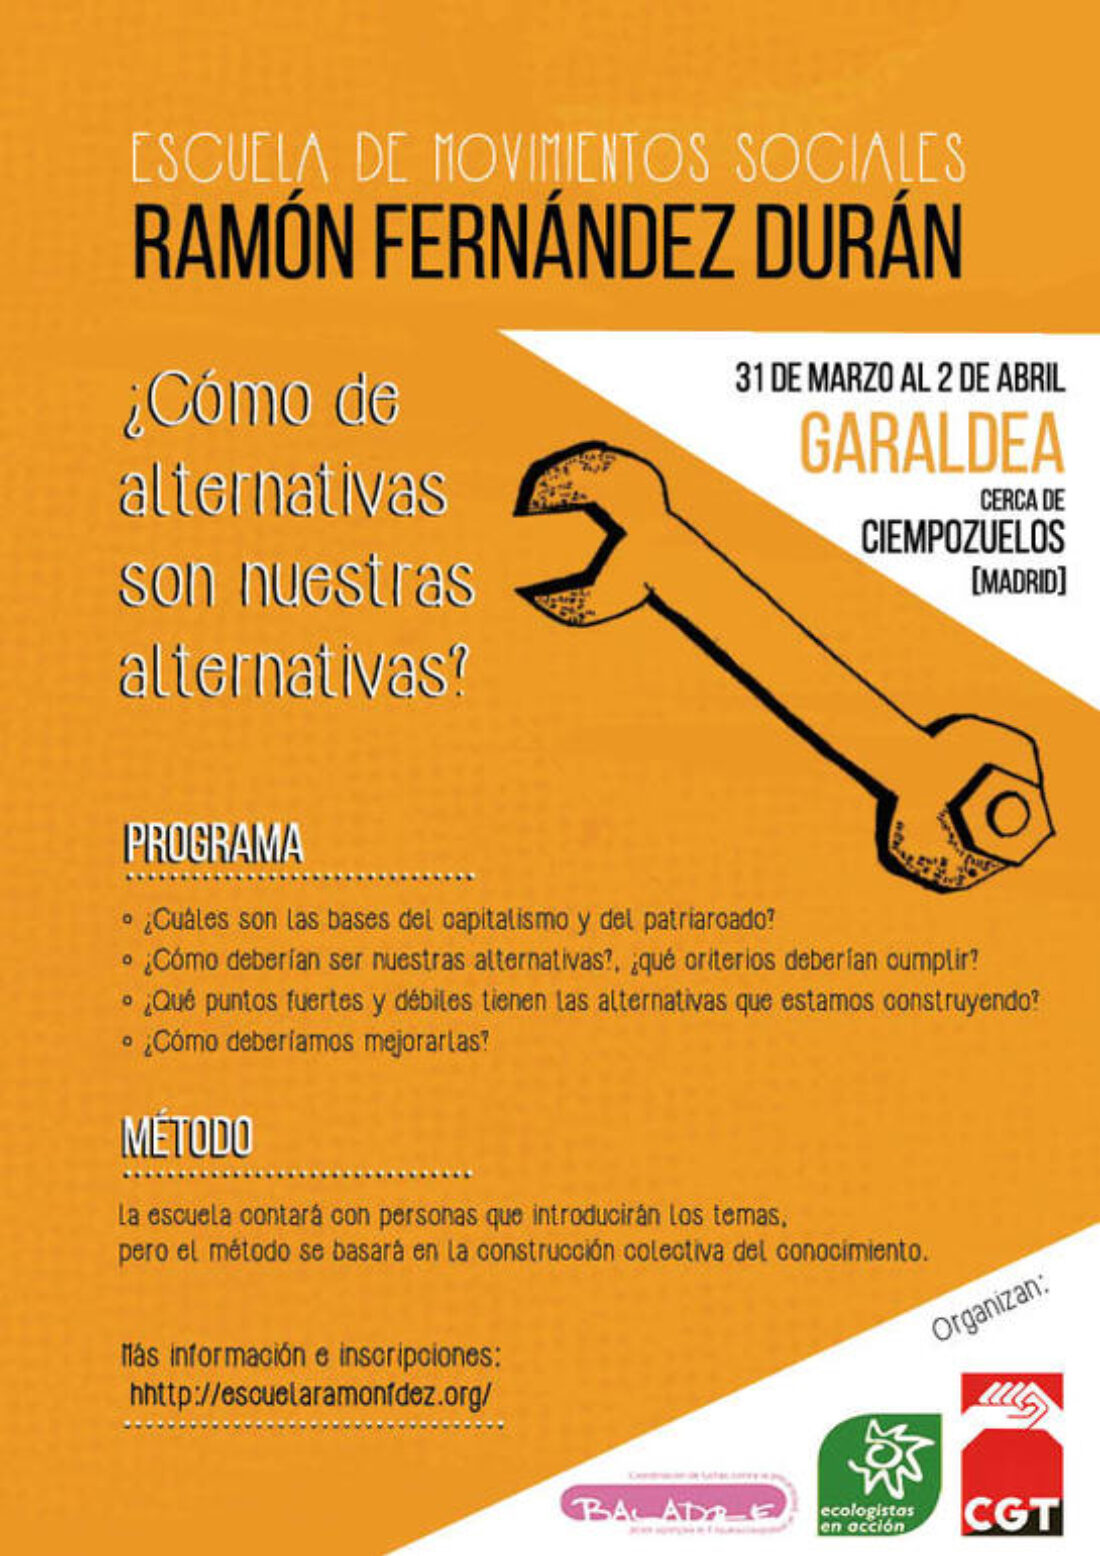 Nos ponemos en marcha para preparar una nueva edición de la Escuela de los Movimientos Sociales Ramón Fernández Durán